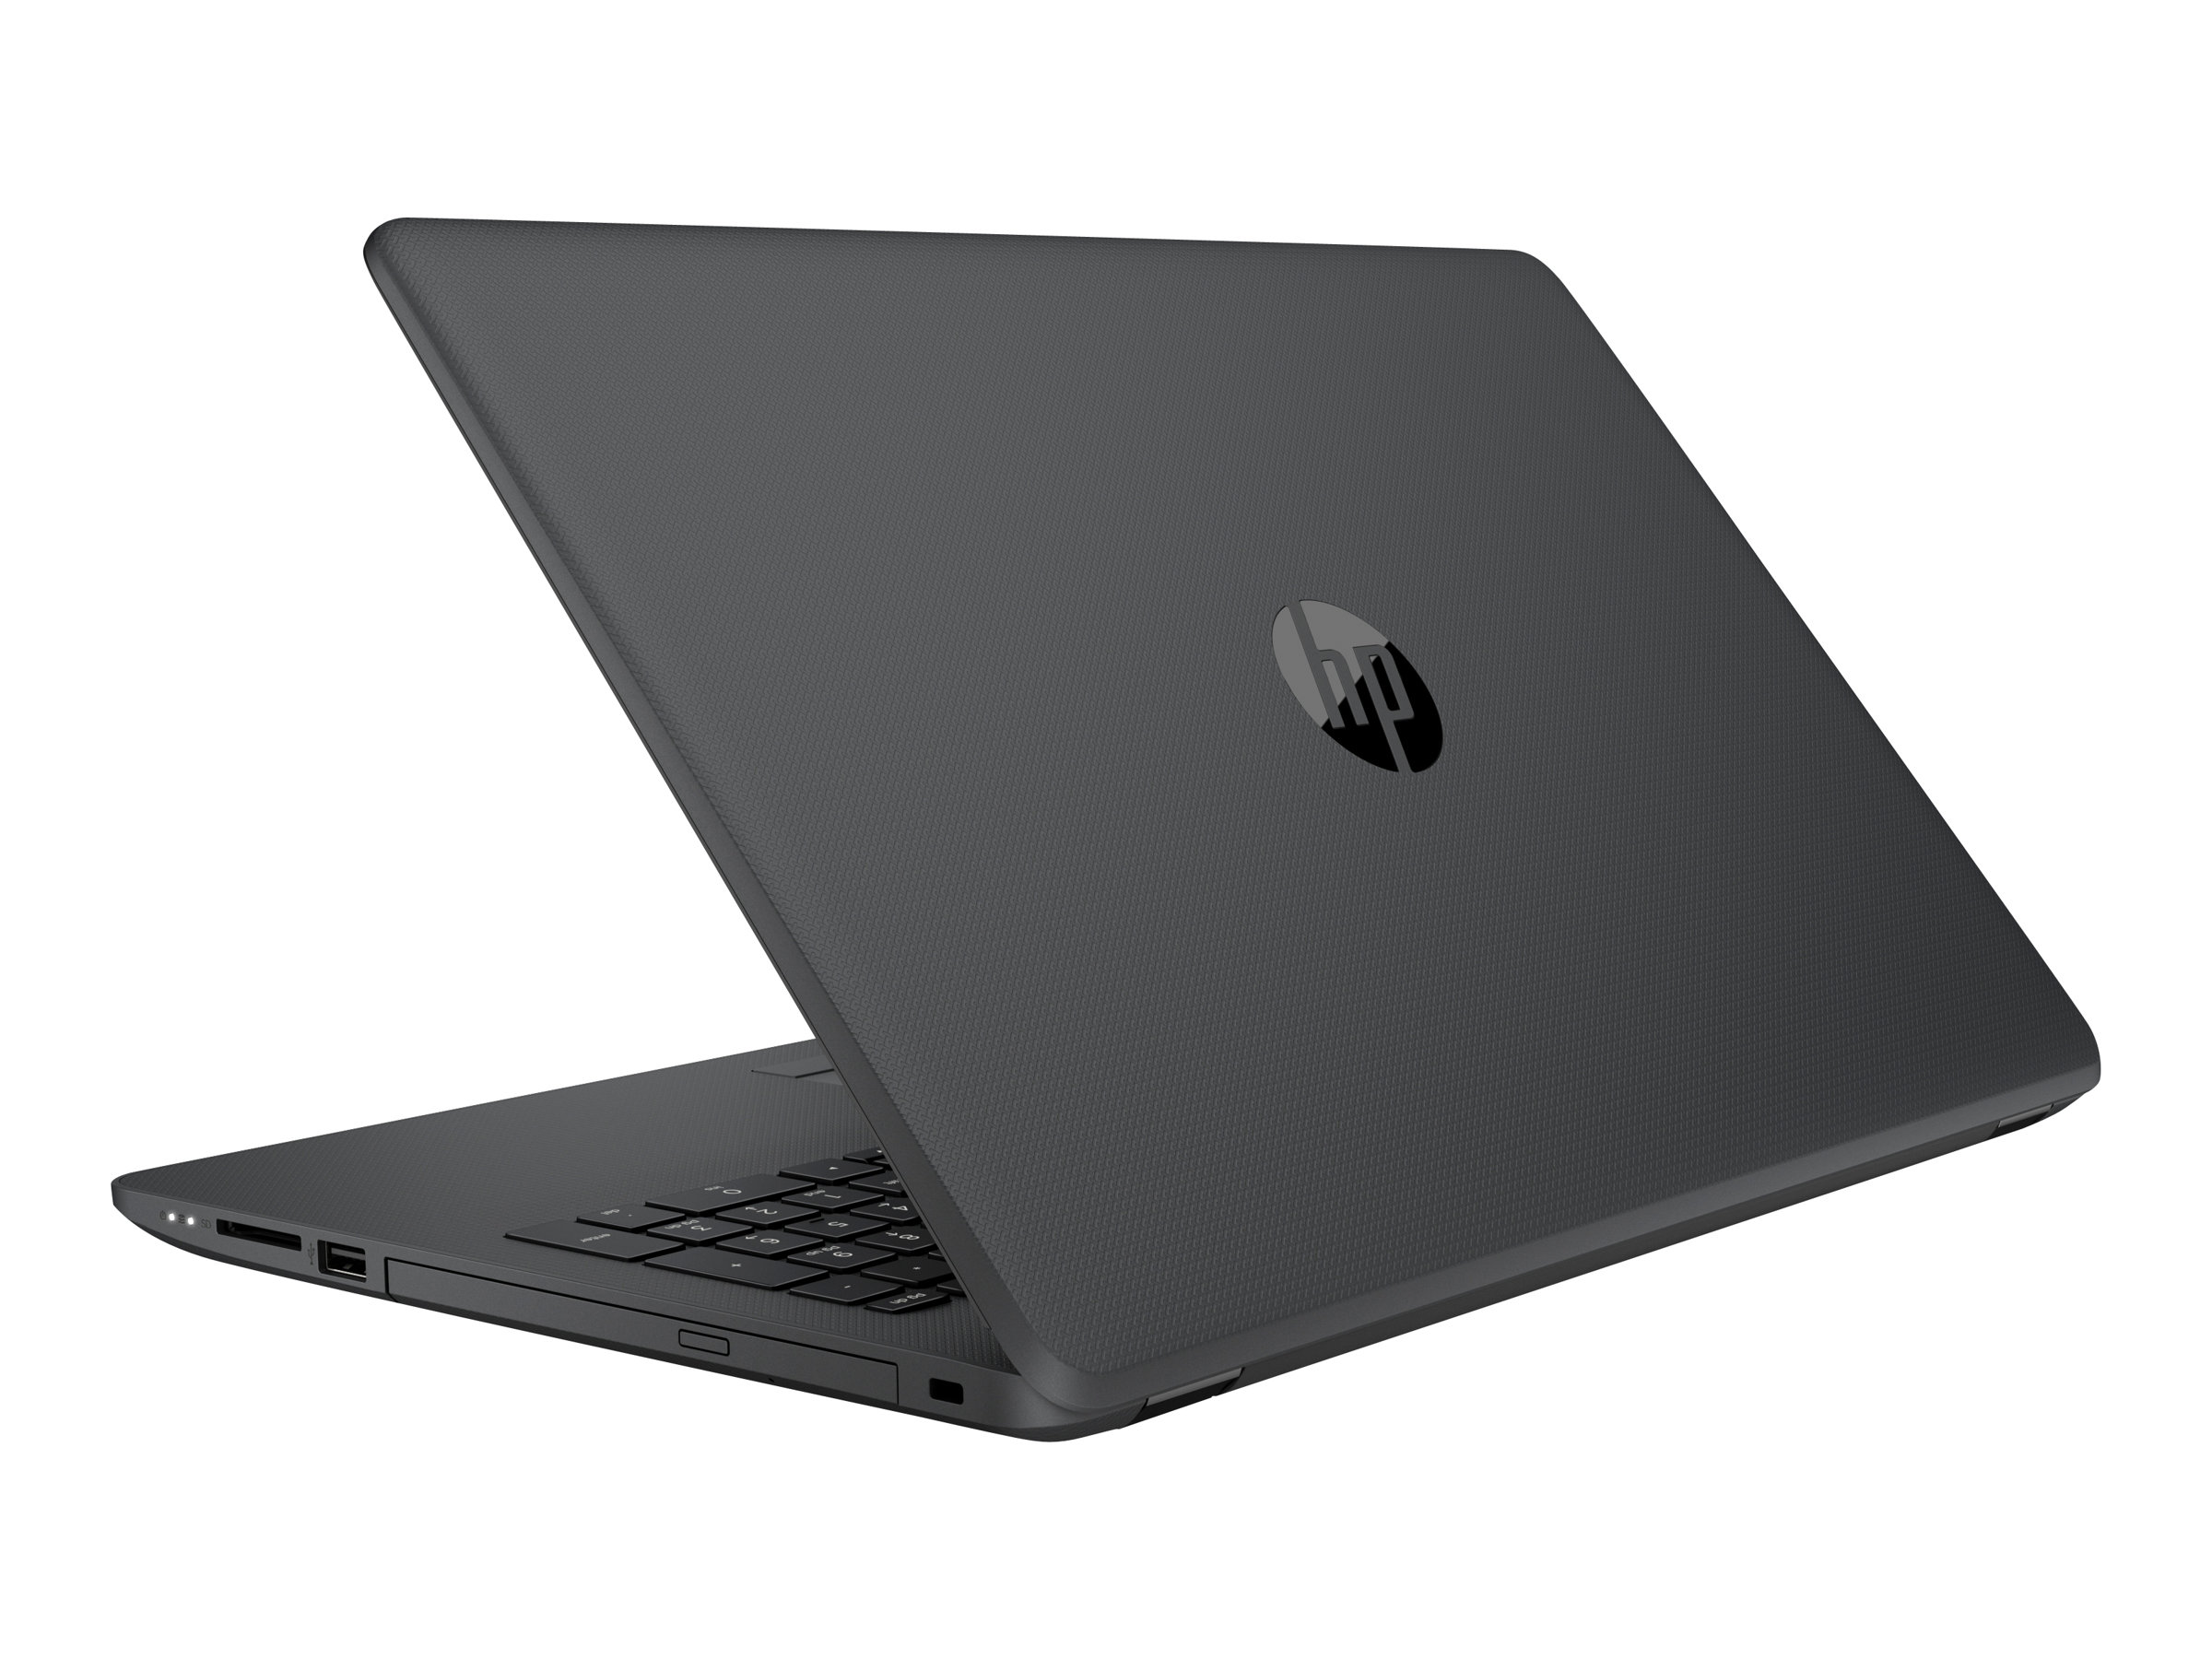 aankleden Afwijzen Permanent HP 250 G6 Notebook - Intel Core i3 7020U / 2.3 GHz | www.shi.com